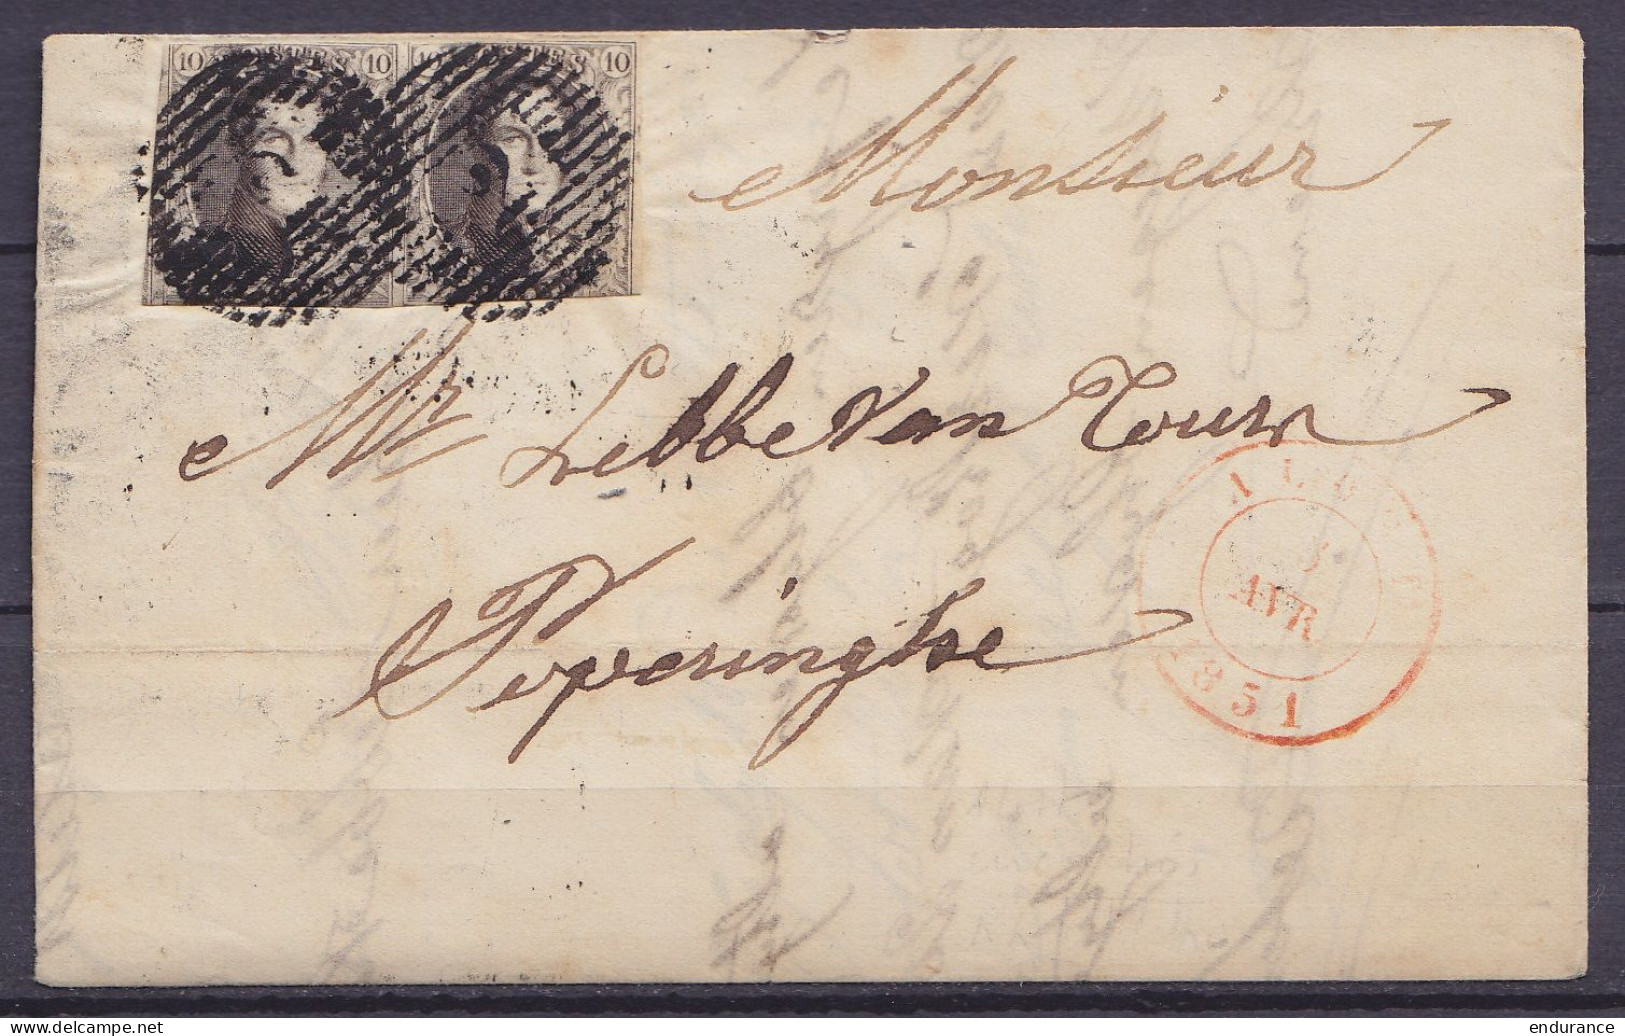 L. Affr. Paire N°3 P2 Càd ALOST /5 AVRIL 1851 Pour POPERINGHE (au Dos: Càd Arrivée POPERINGHE) - 1849-1850 Medallions (3/5)